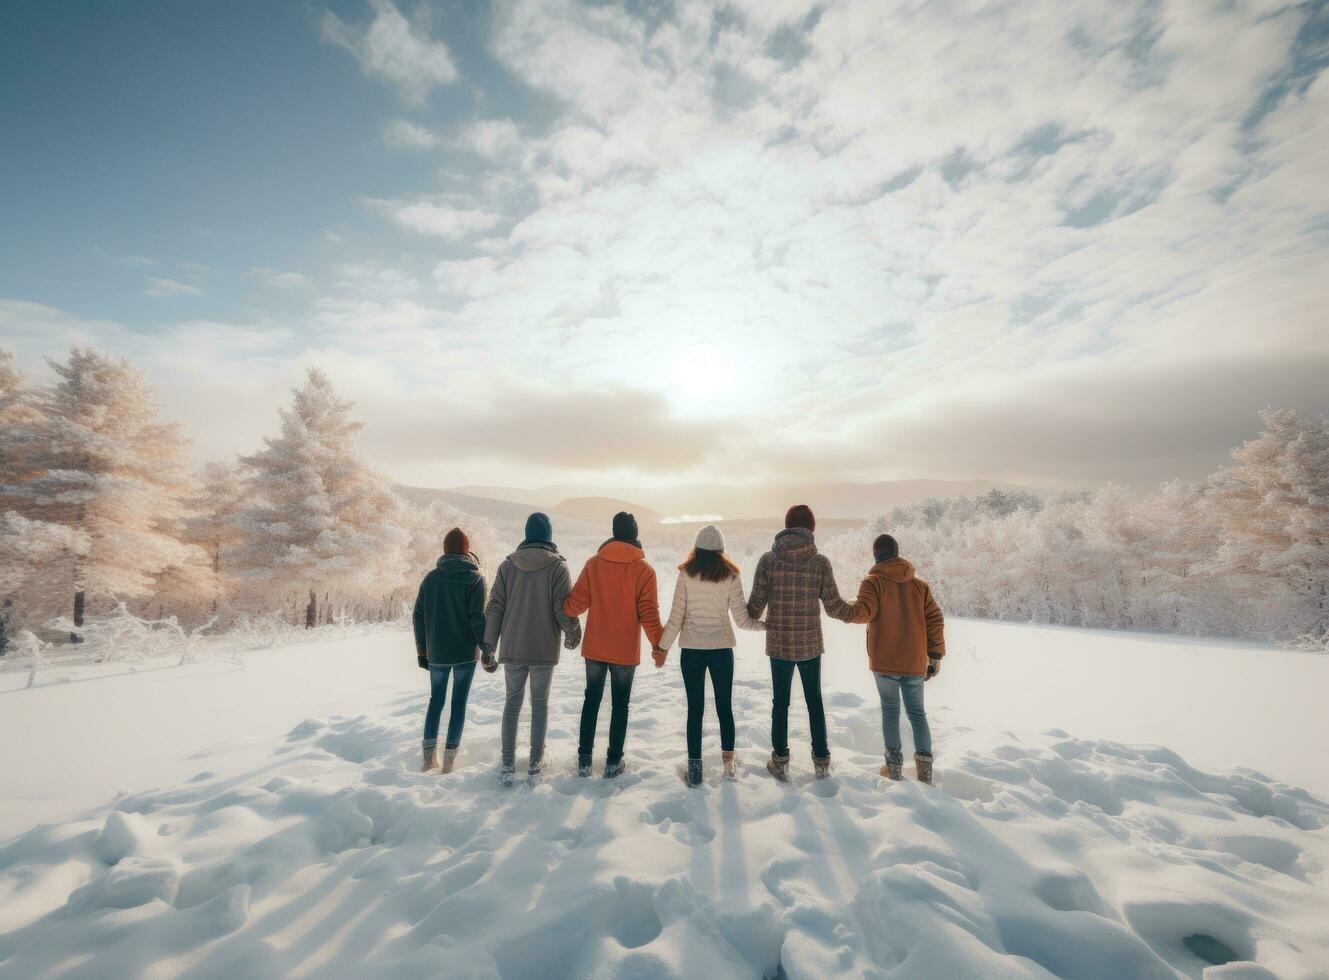 relation amicale groupe en marchant ensemble avec bras en haut sur neigeux Montagne Roche photo